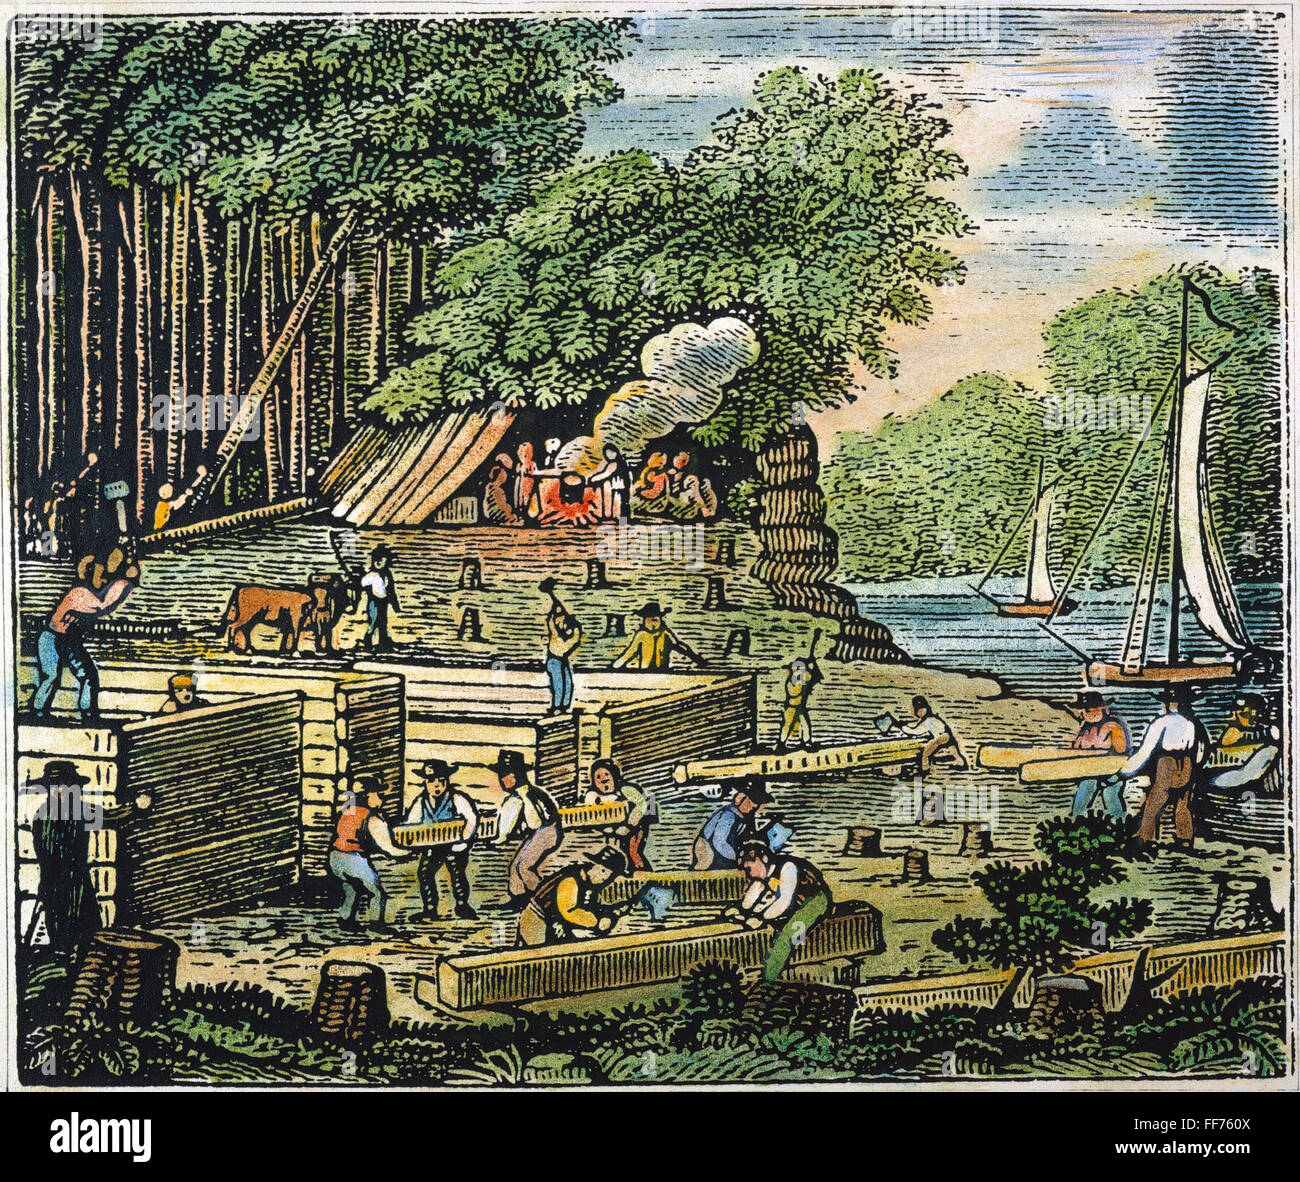 JAMESTOWN : règlement. /Nla construction de Jamestown, la Virginie : gravure couleur, 19e siècle. Banque D'Images